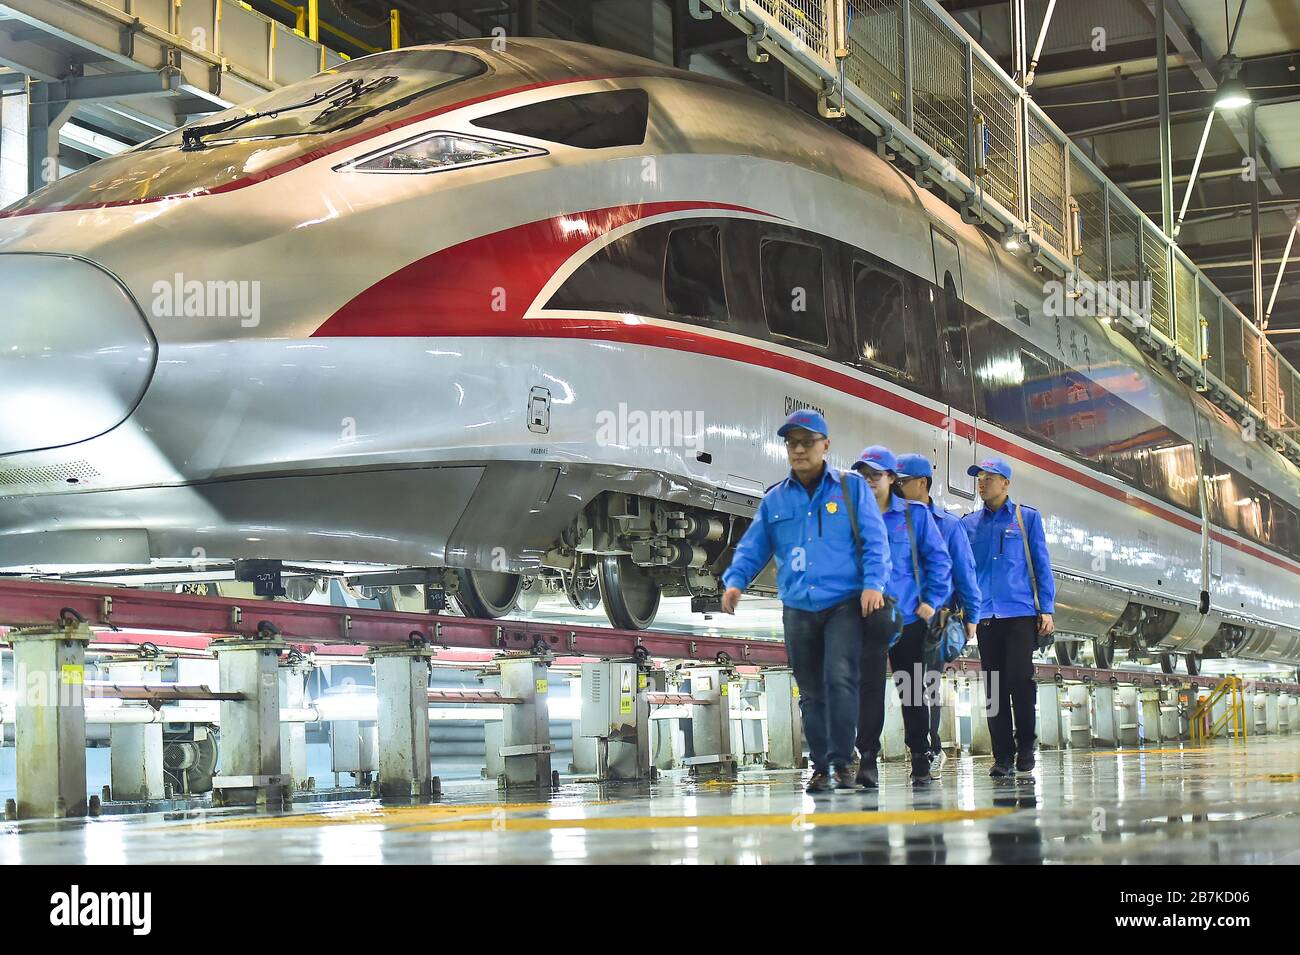 Les responsables et les réparateurs travaillent sur le site de service de trains à grande vitesse pour s'assurer que tous les trains fonctionnent bien, Shijiazhuang City, Hebei au nord de la Chine Banque D'Images